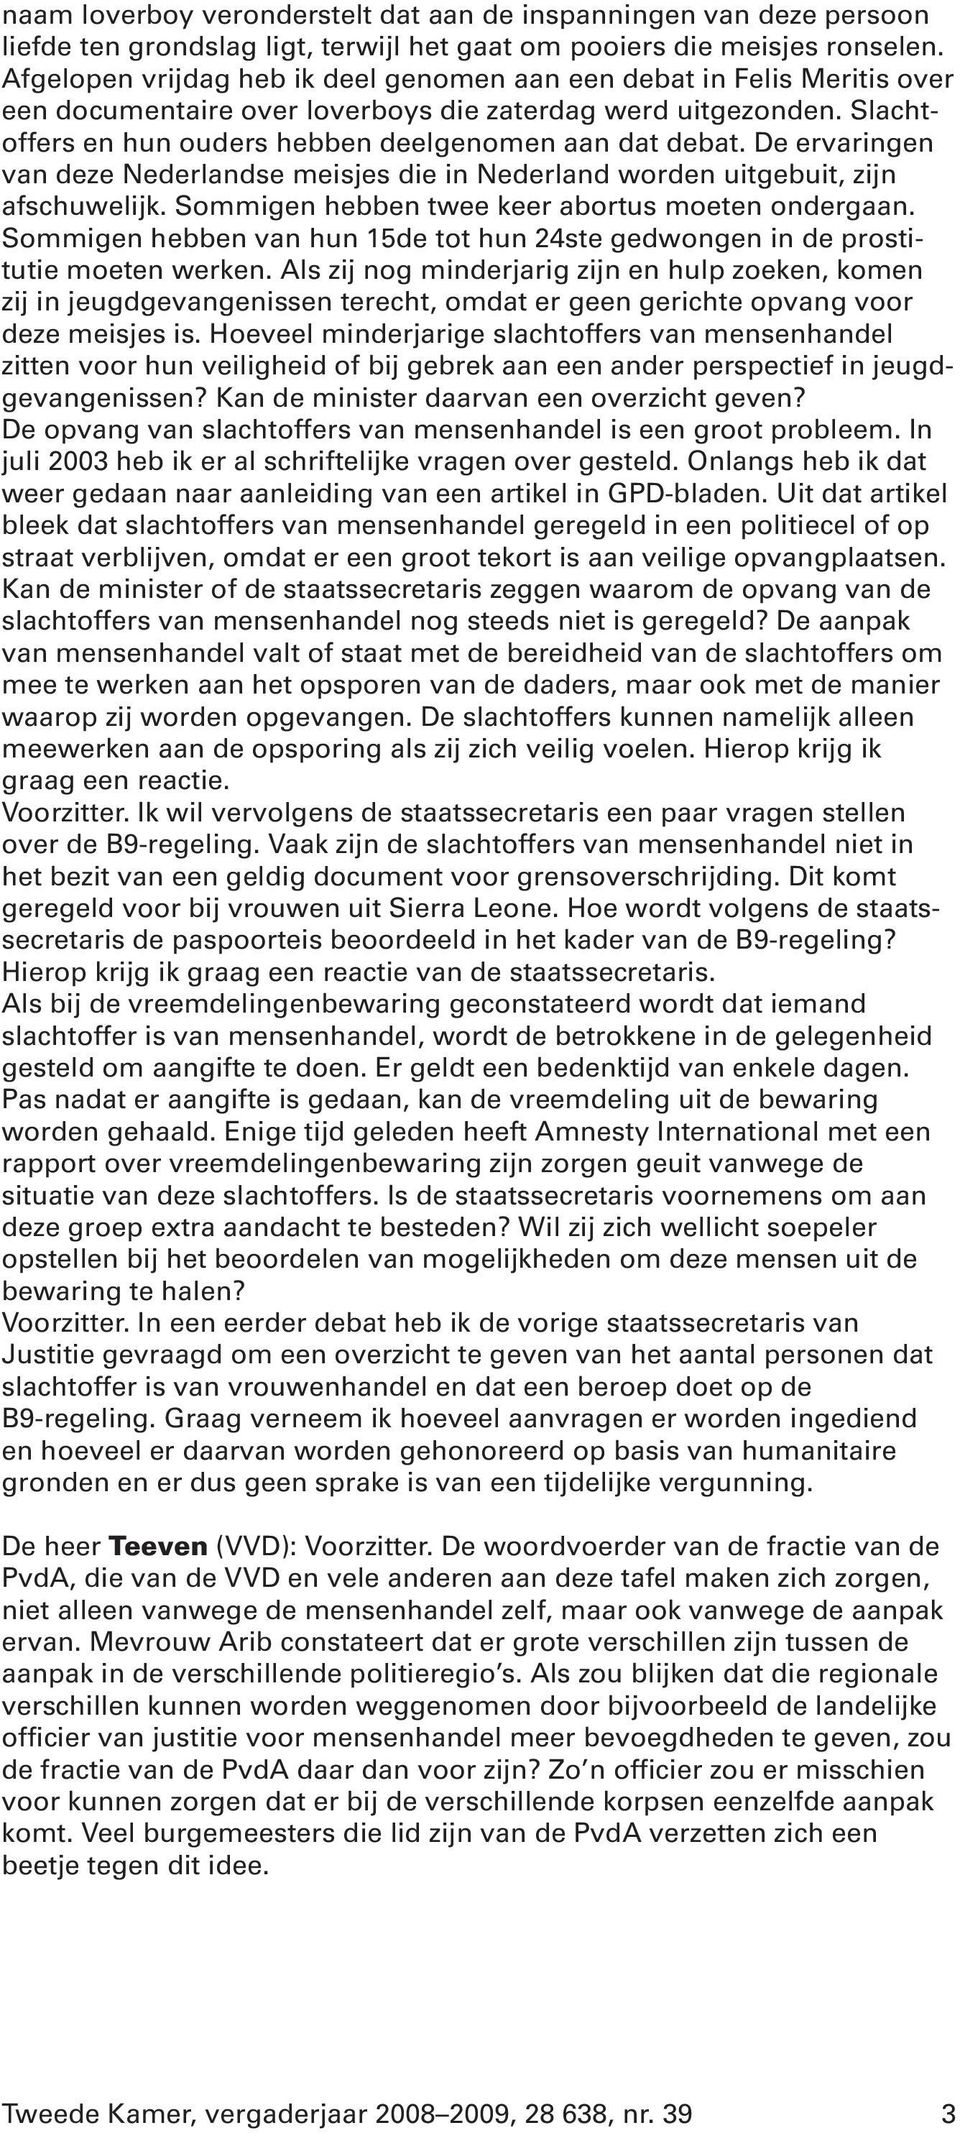 De ervaringen van deze Nederlandse meisjes die in Nederland worden uitgebuit, zijn afschuwelijk. Sommigen hebben twee keer abortus moeten ondergaan.